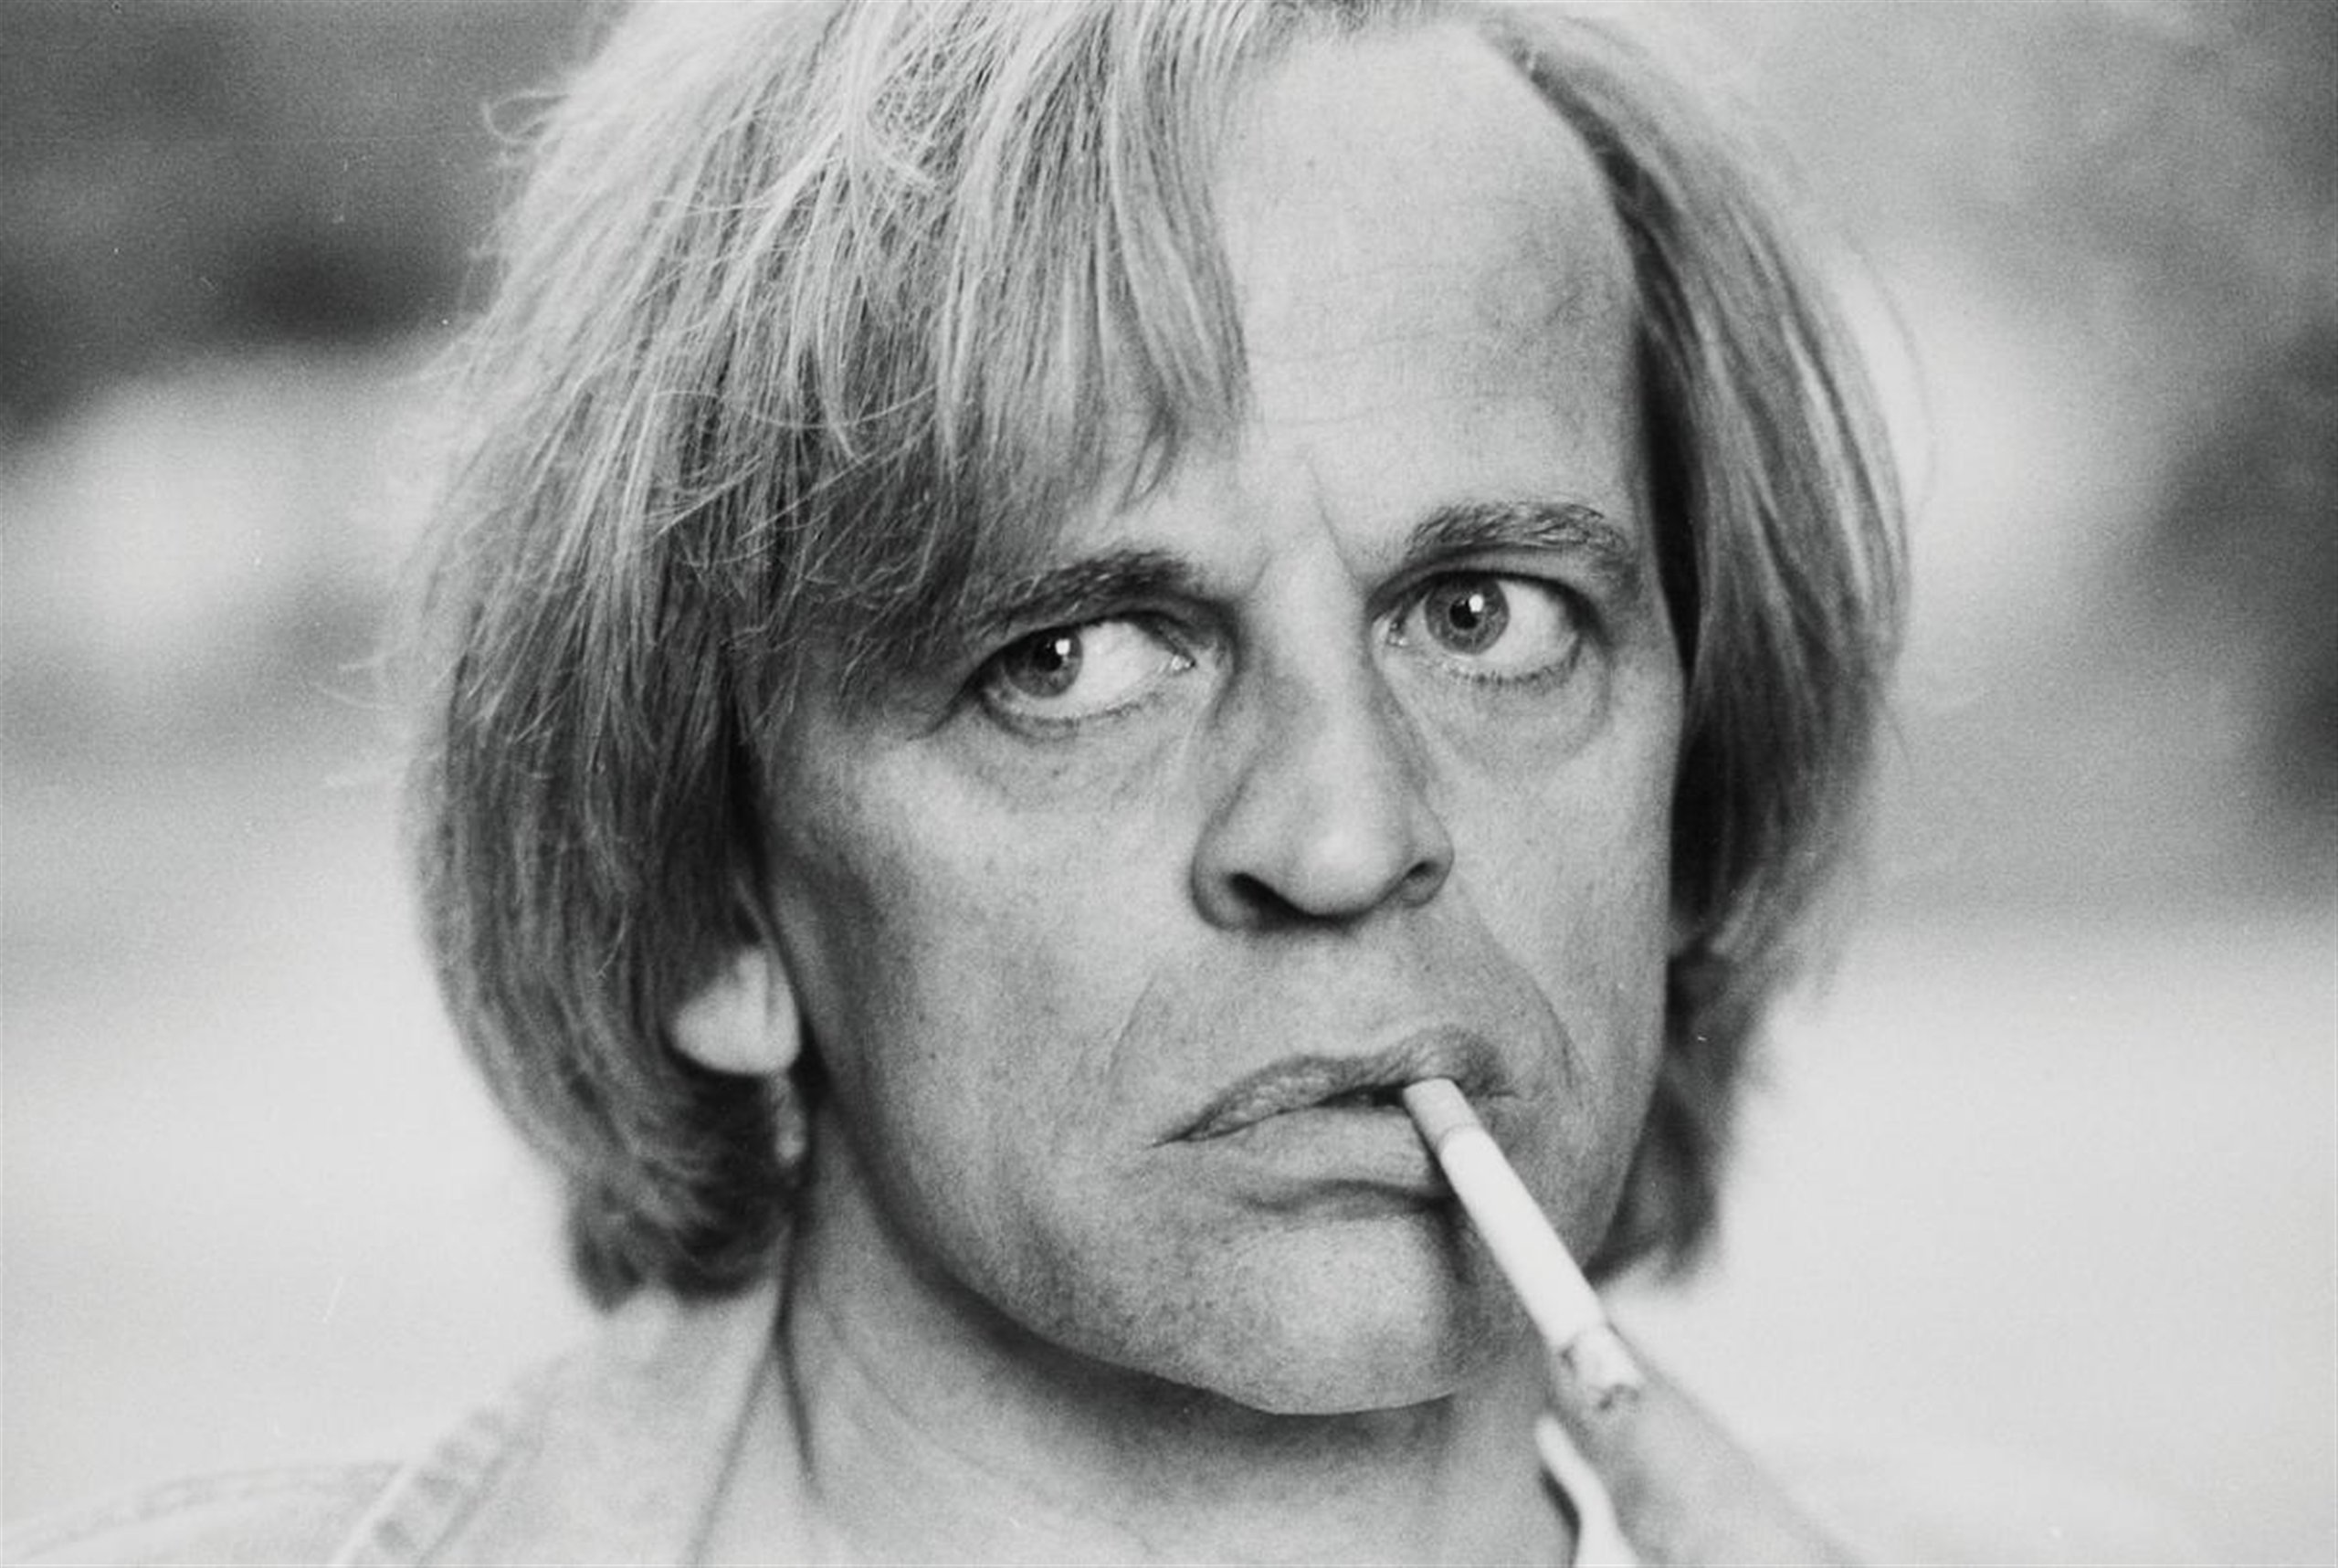 La ira de Klaus Kinski